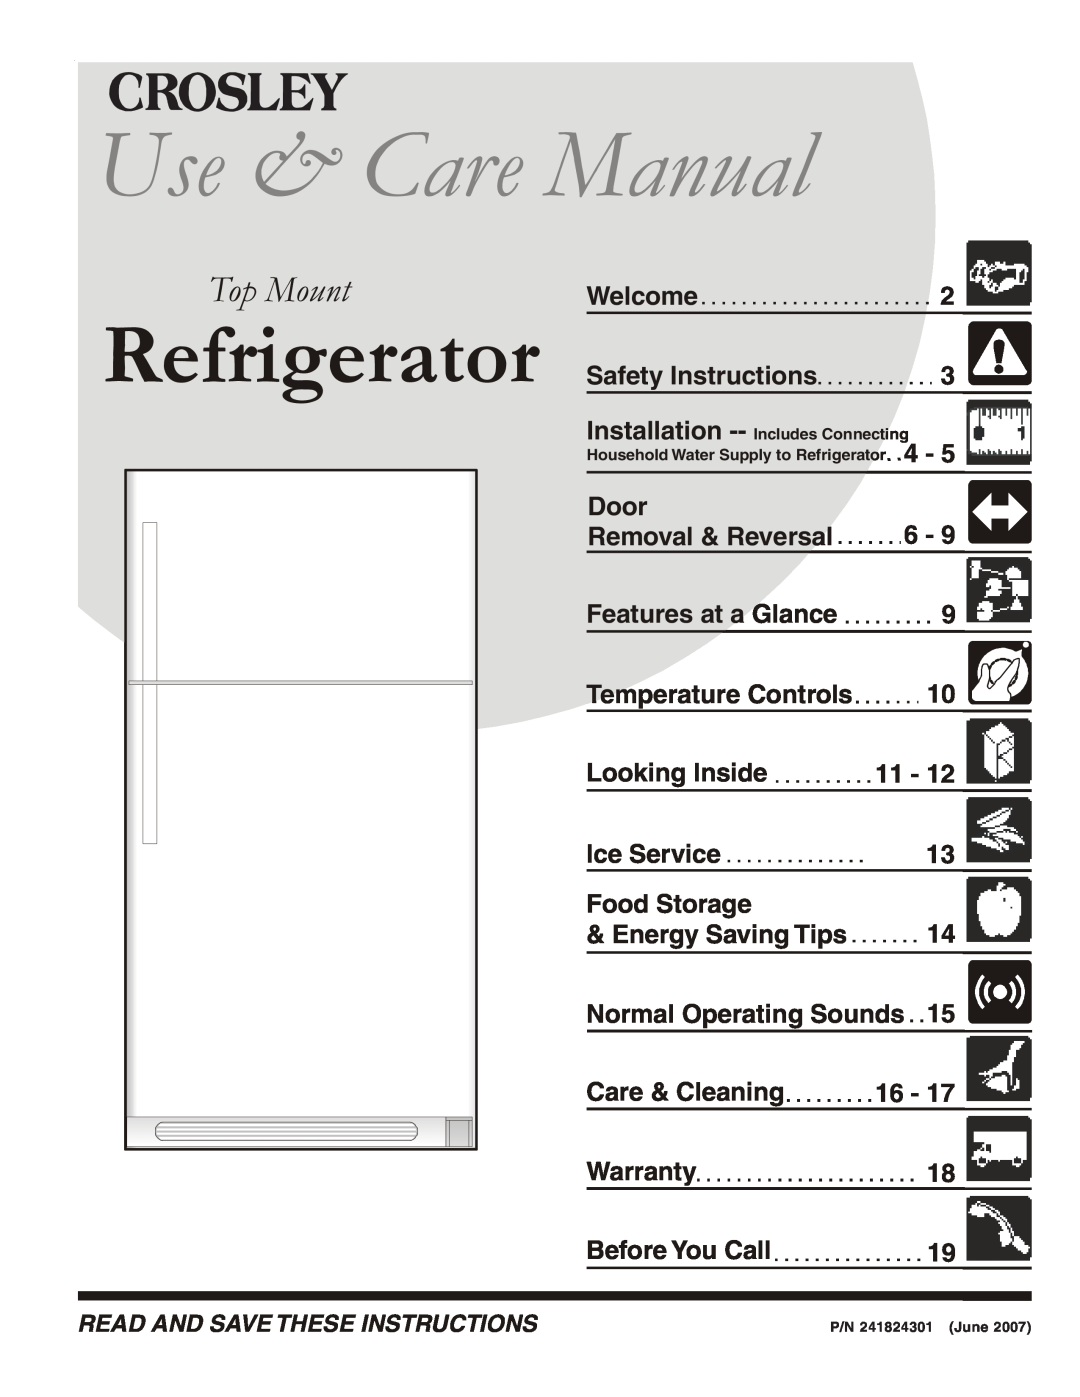 Crosley 241824301 warranty Use & Care Manual, Refrigerator, Top Mount 